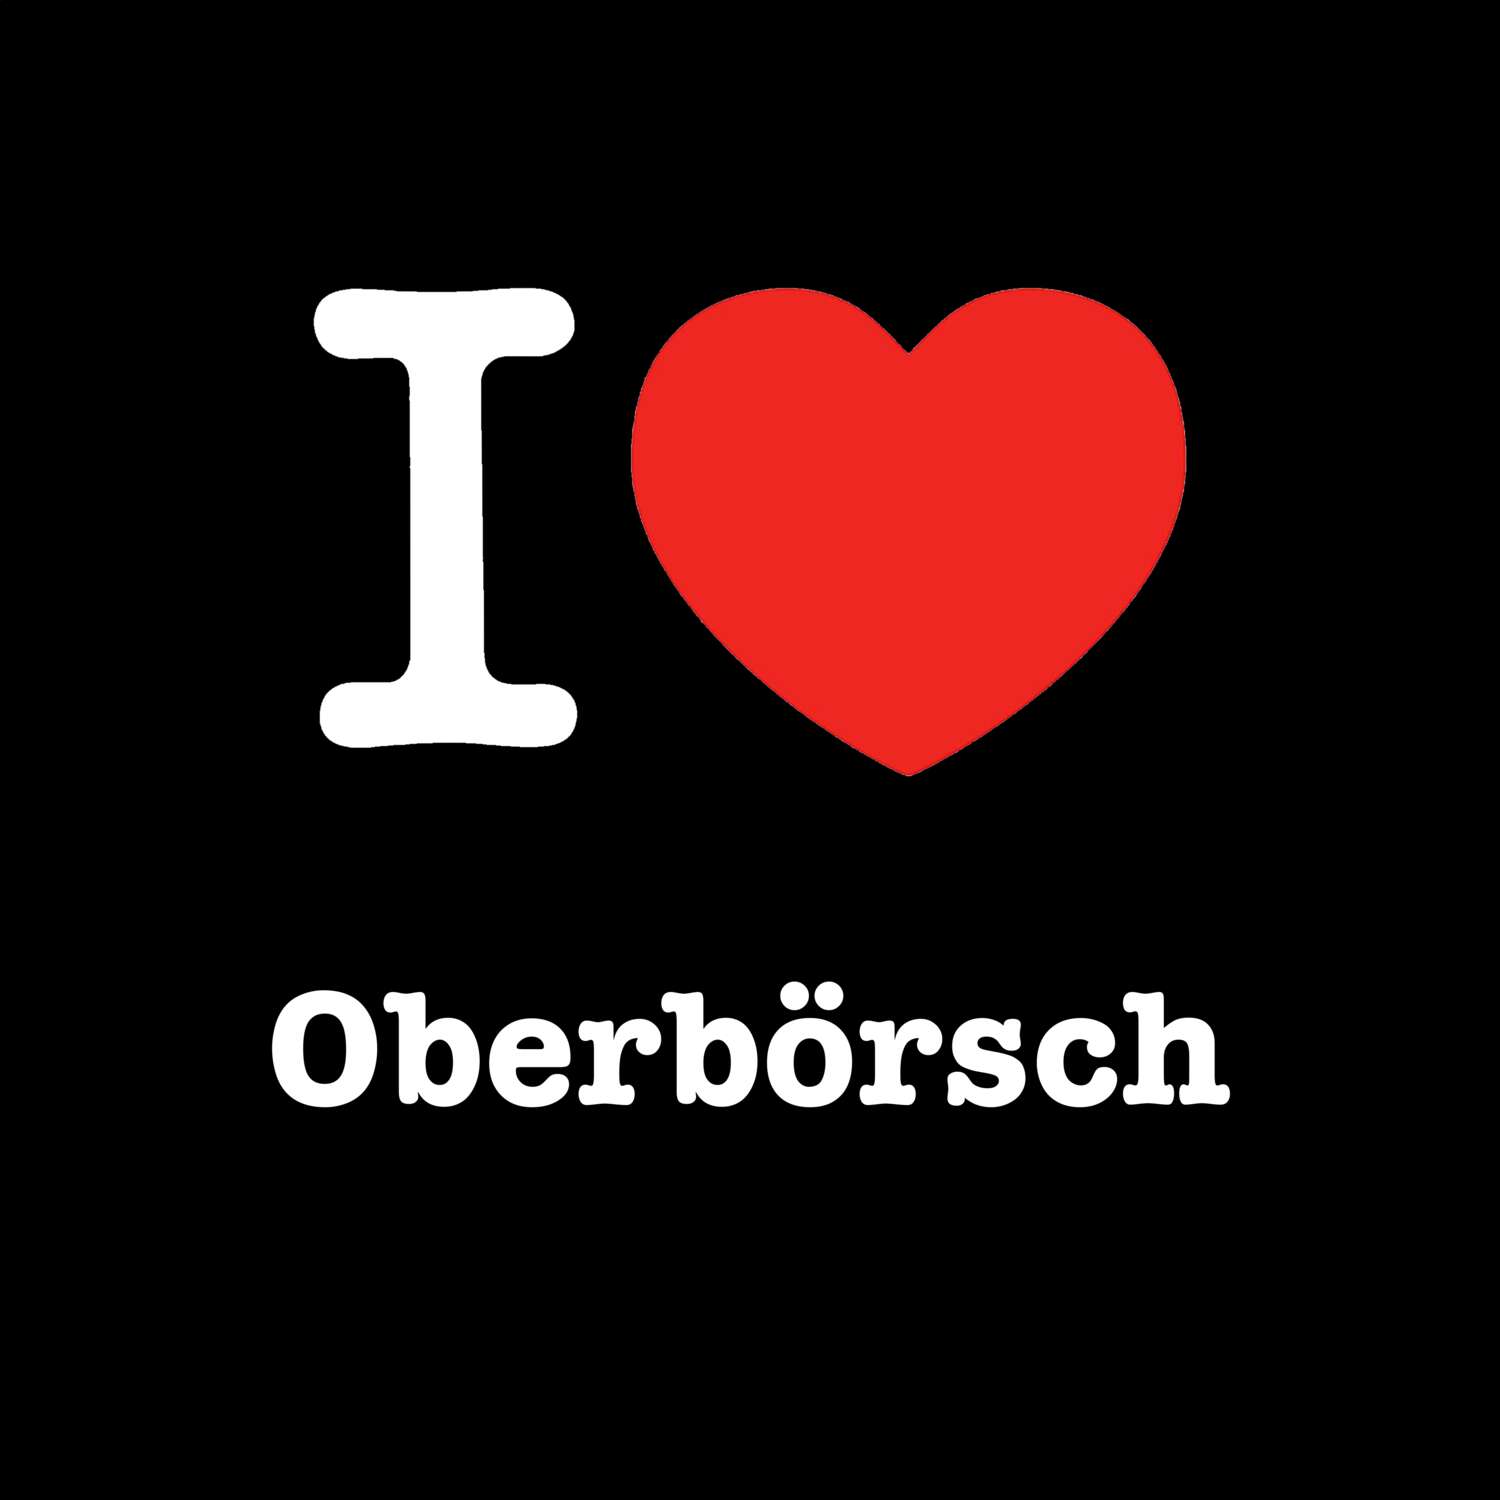 Oberbörsch T-Shirt »I love«